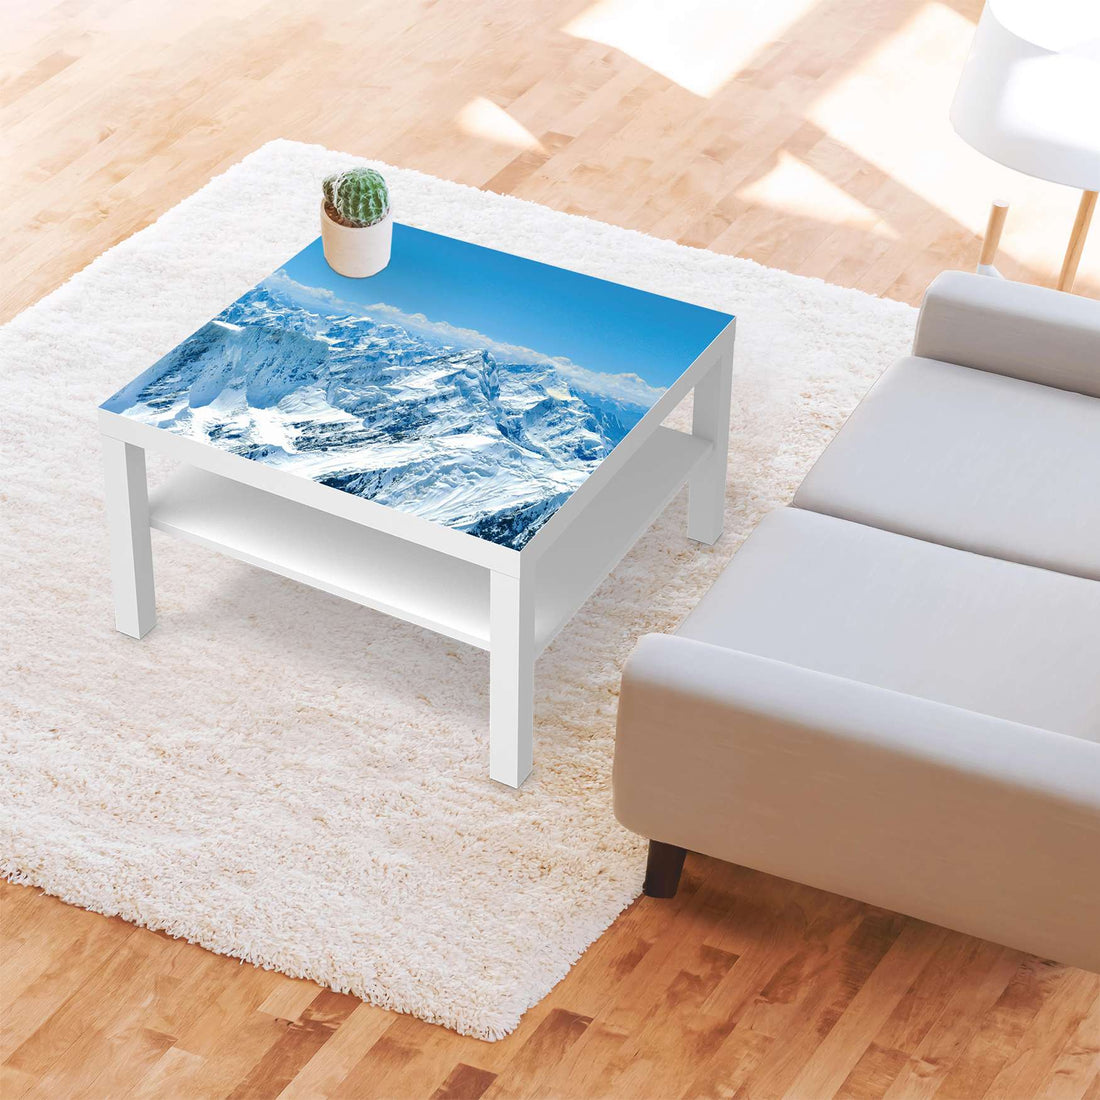 Selbstklebende Folie Himalaya - IKEA Lack Tisch 78x78 cm - Wohnzimmer